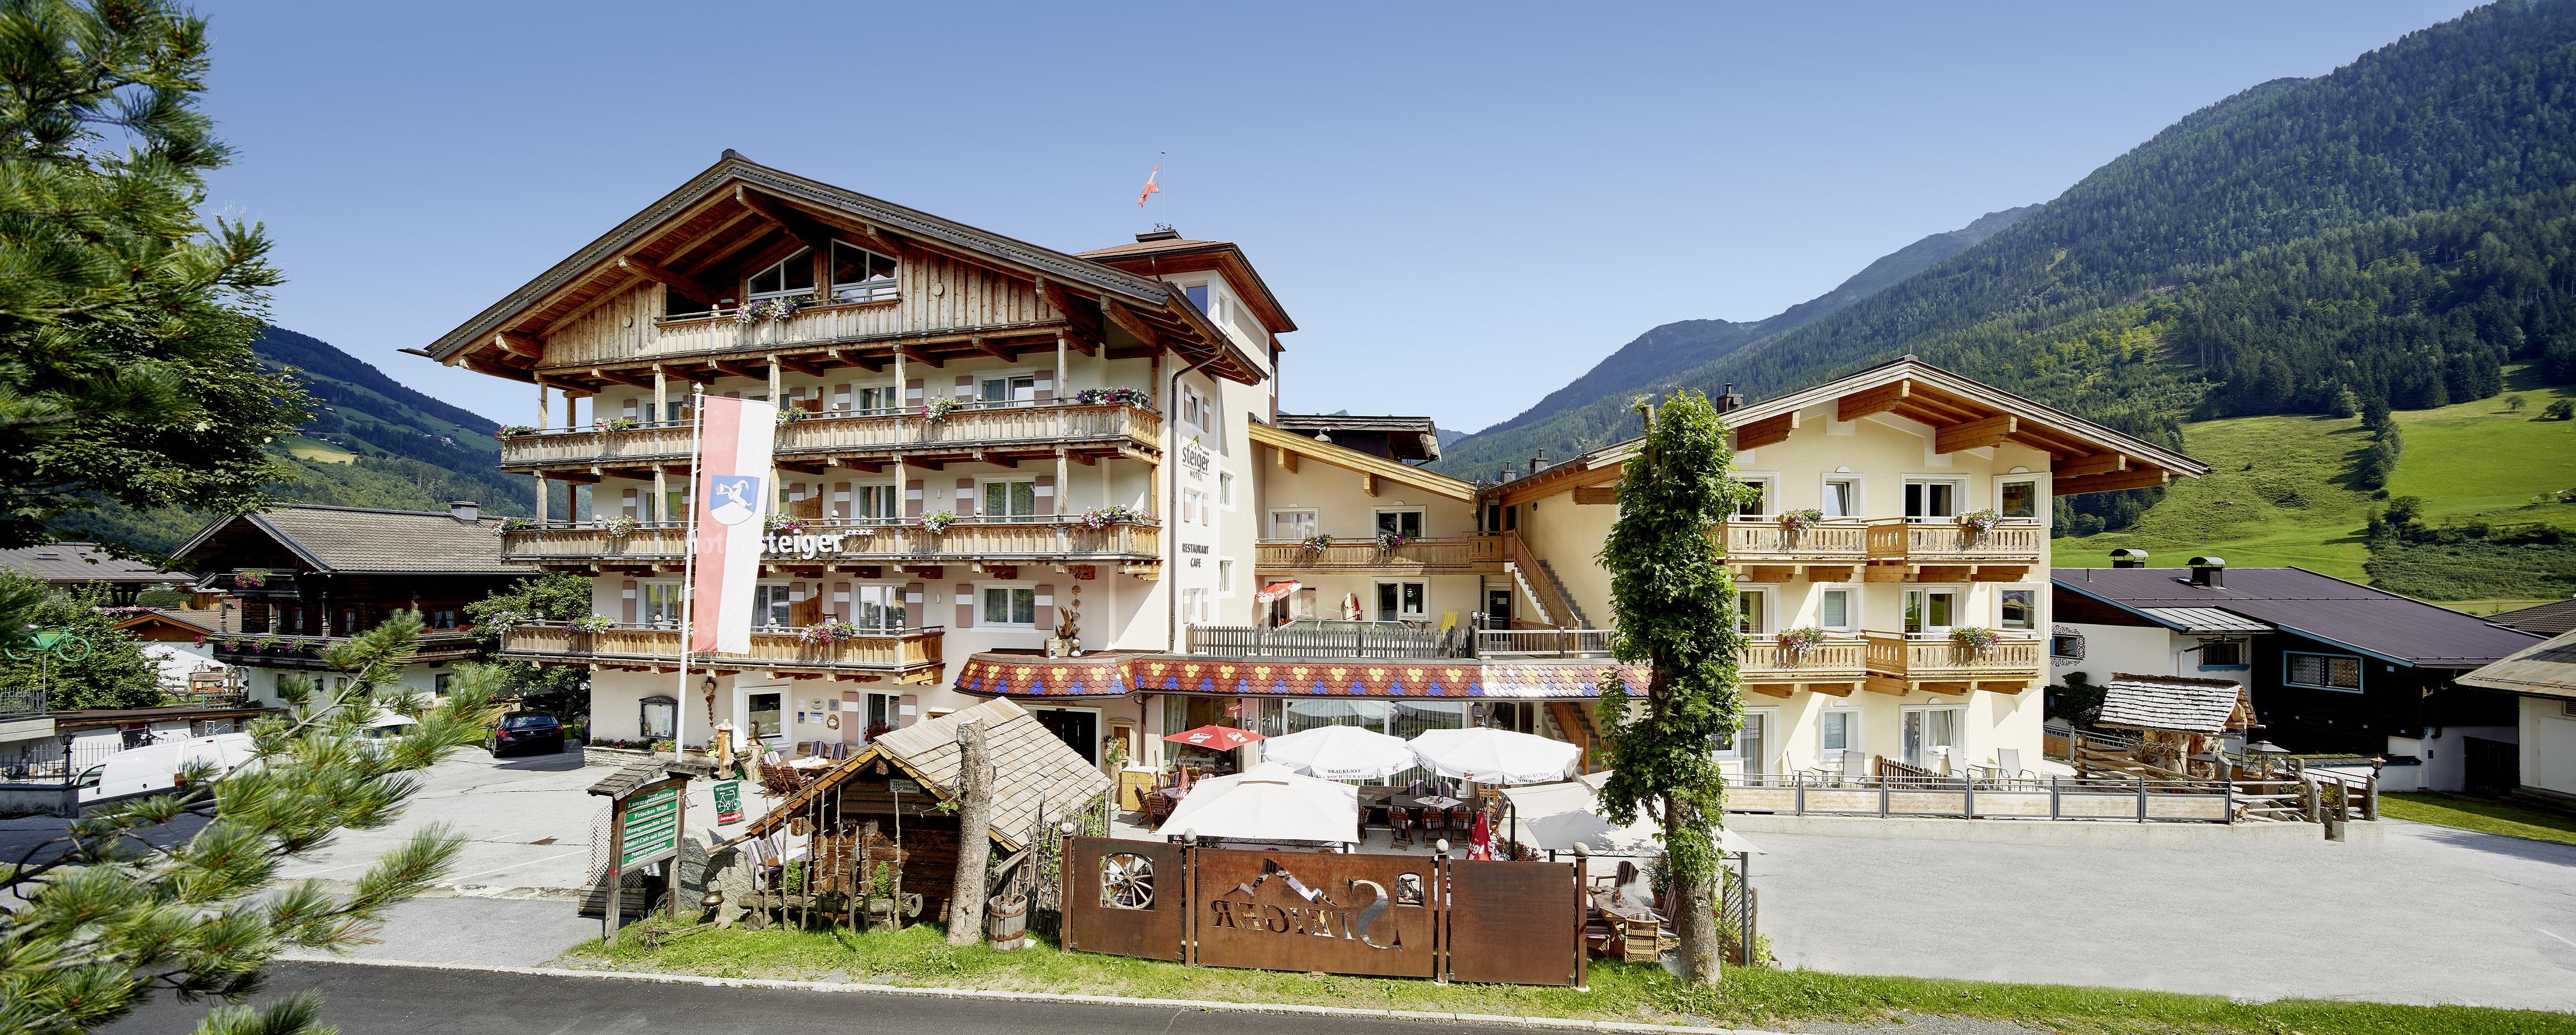 Hotel Steiger Eckhaus, App. Nr. 800, 3 Schlafr&aum Ferienwohnung  Nationalpark Hohe Tauern